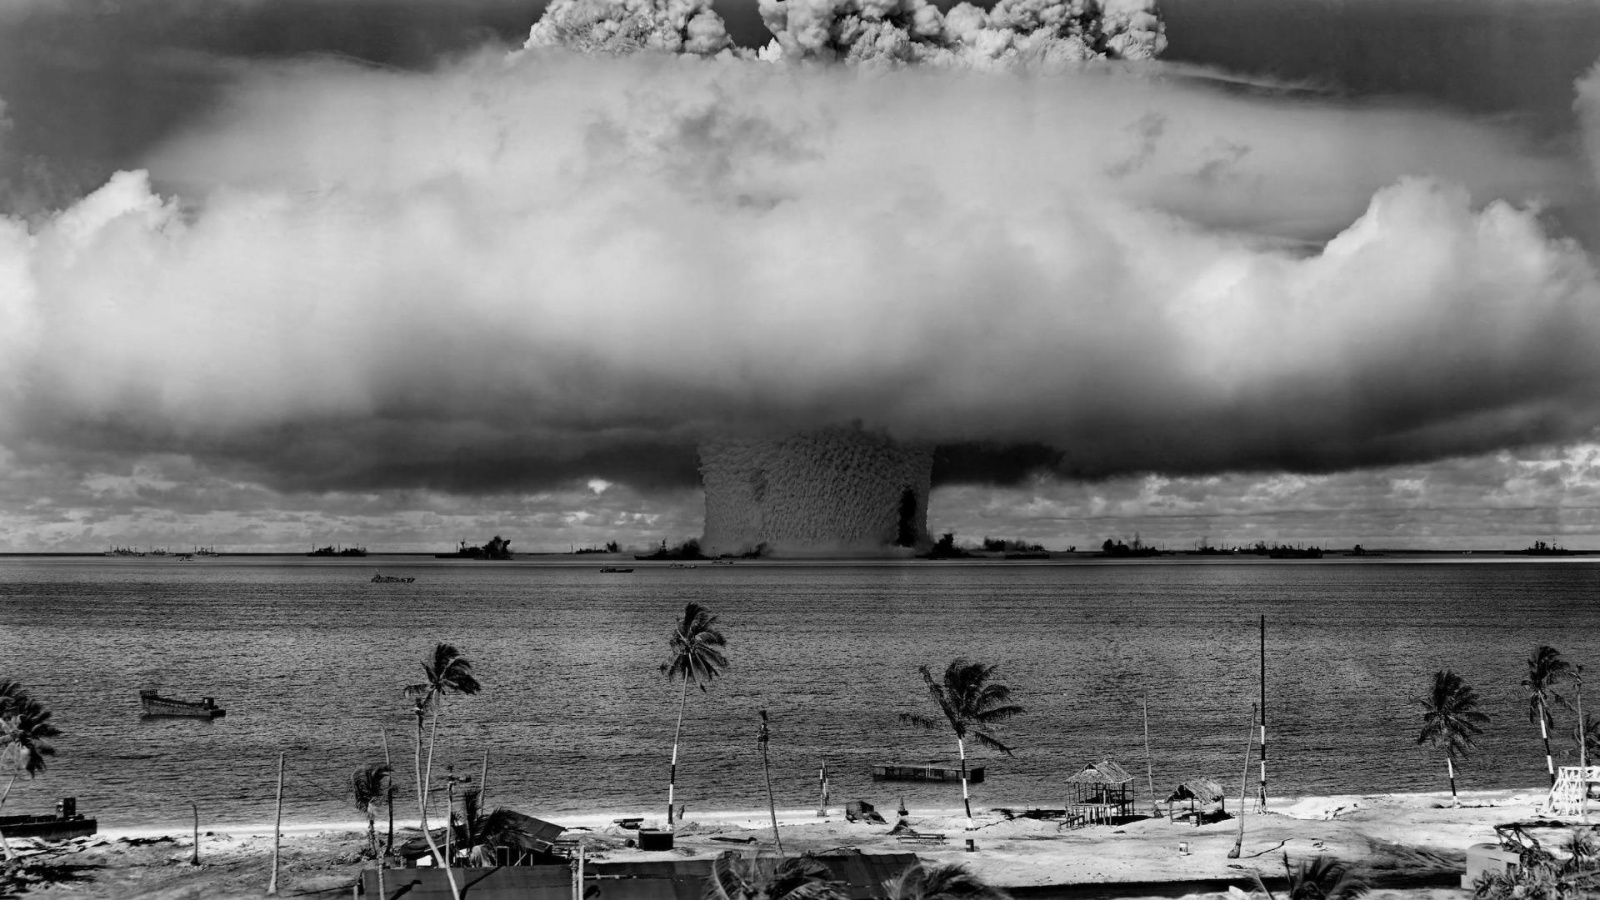 nuclear-bomb-explosion-1600x900.jpg